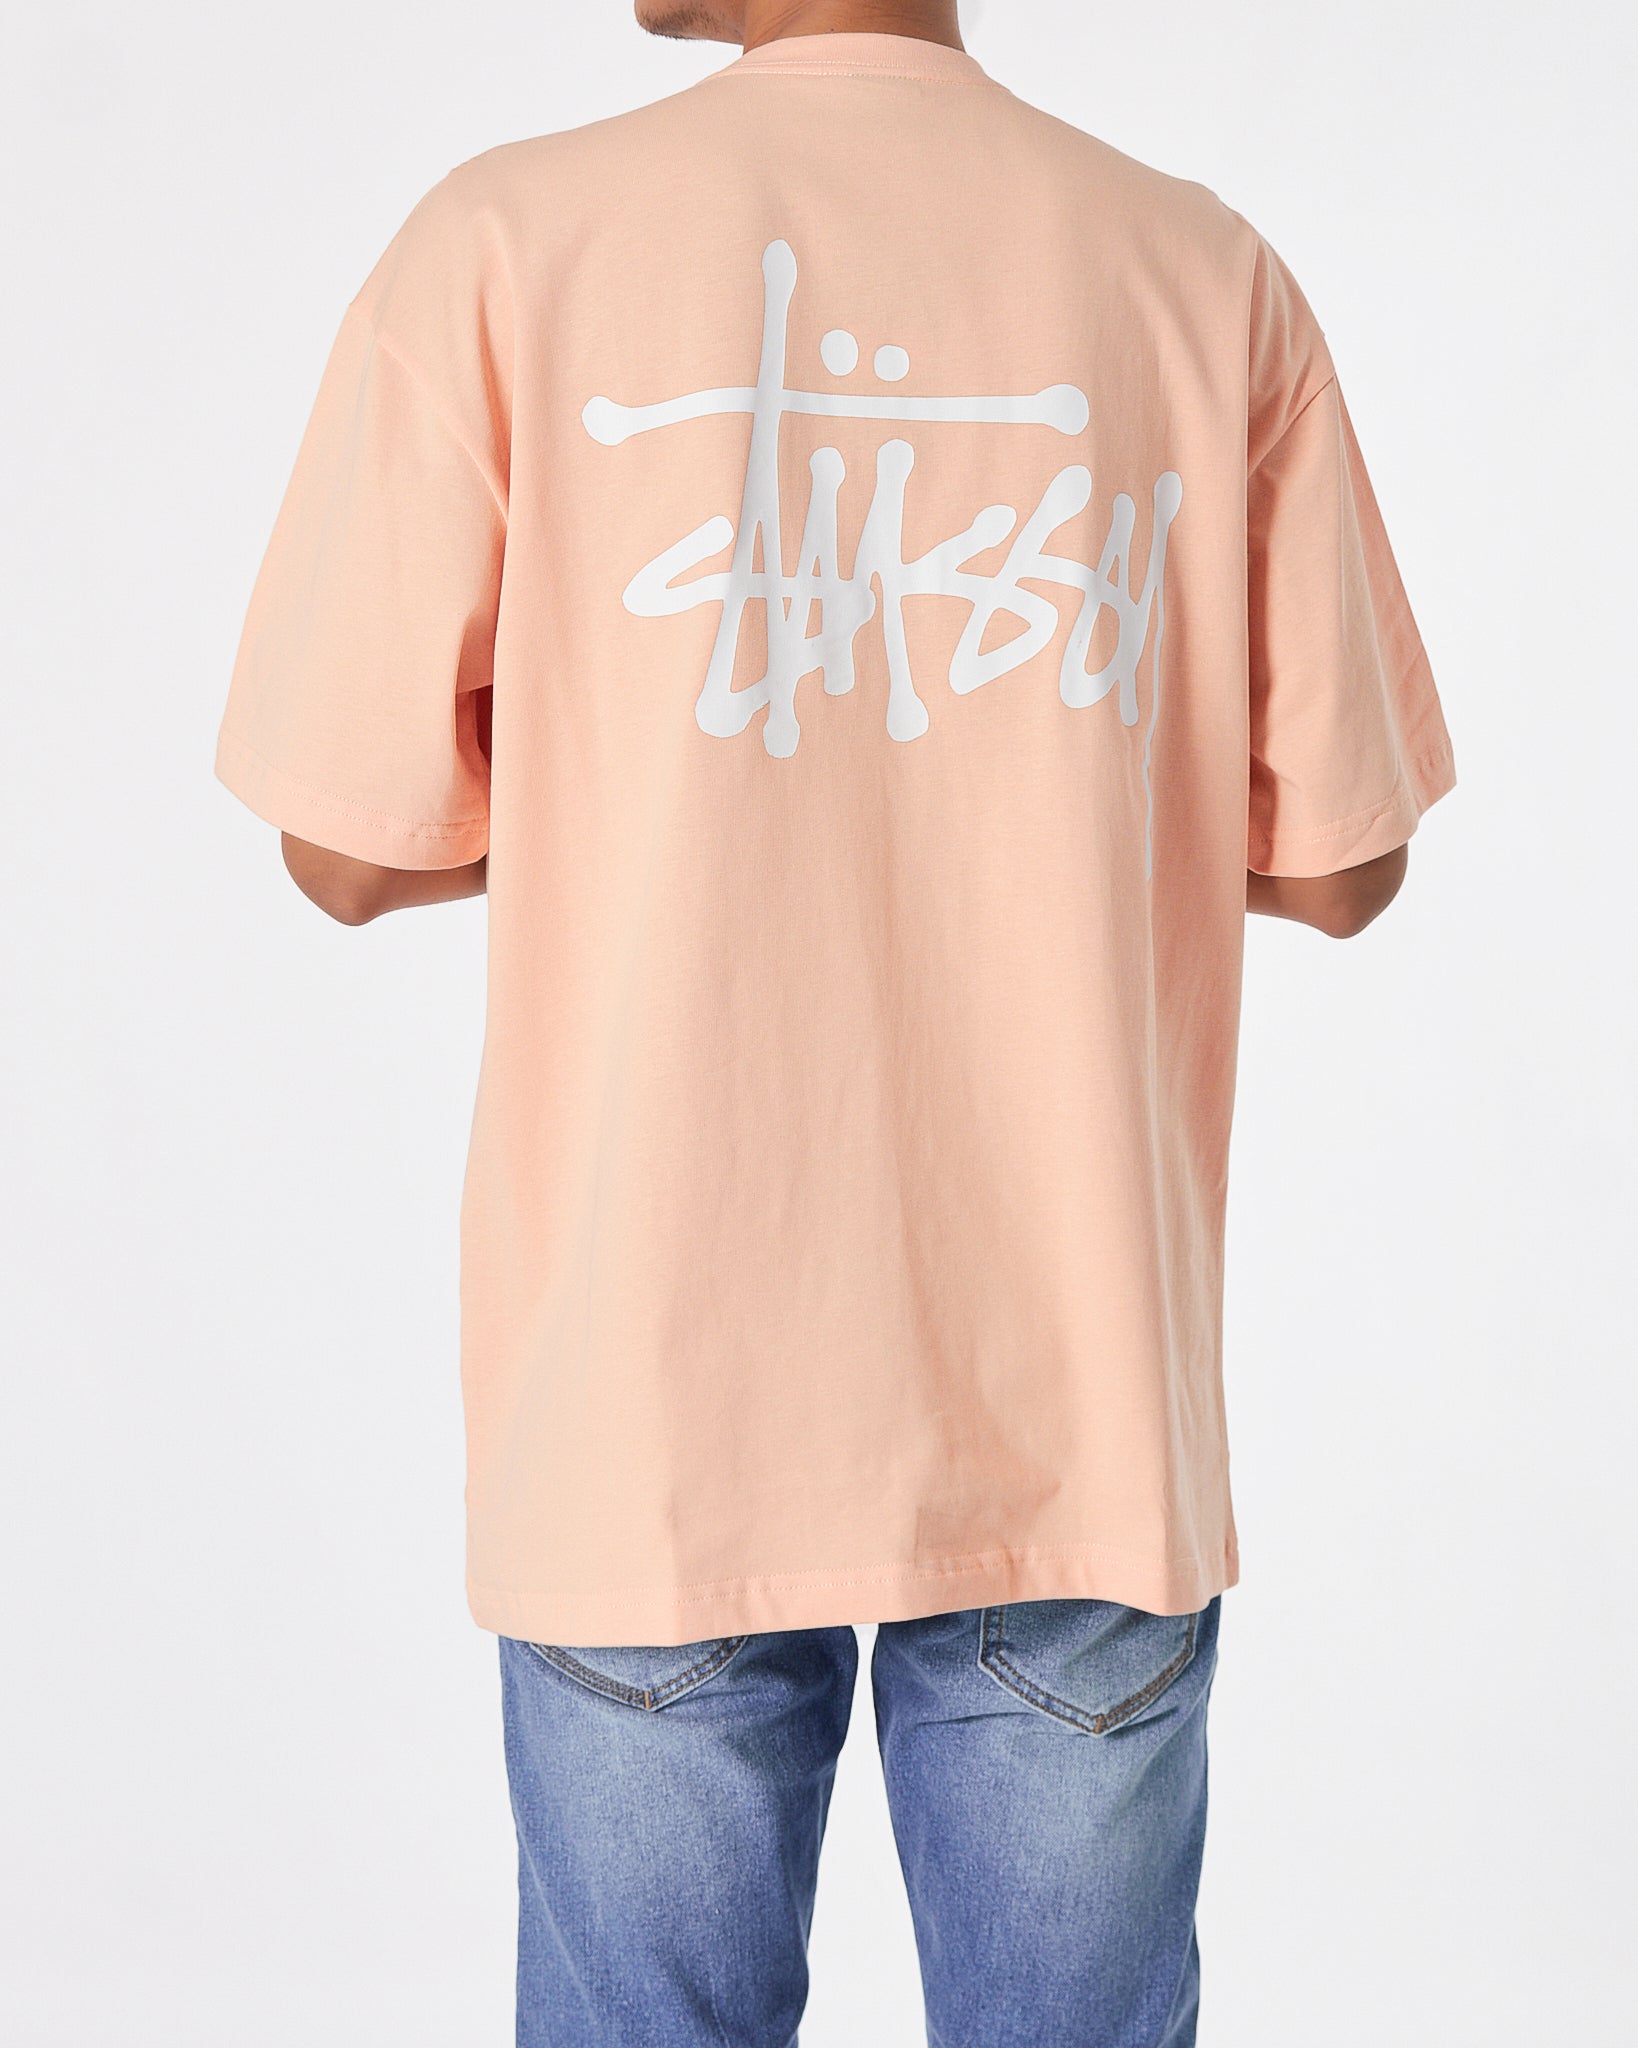 STU Back Logo Printed Men Orange T-Shirt 20.90